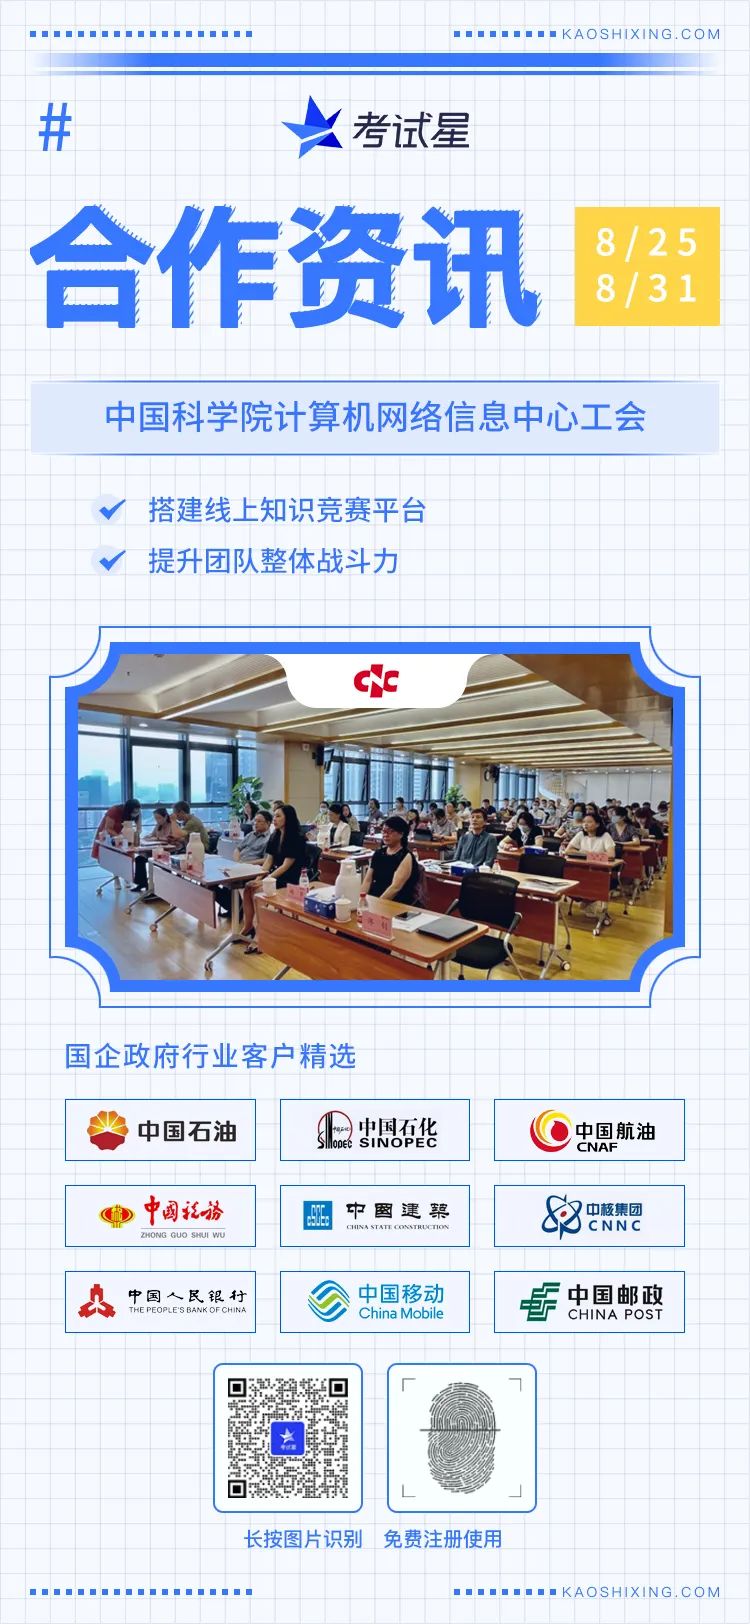 中国科学院计算机网络信息中心工会-线上知识竞赛平台